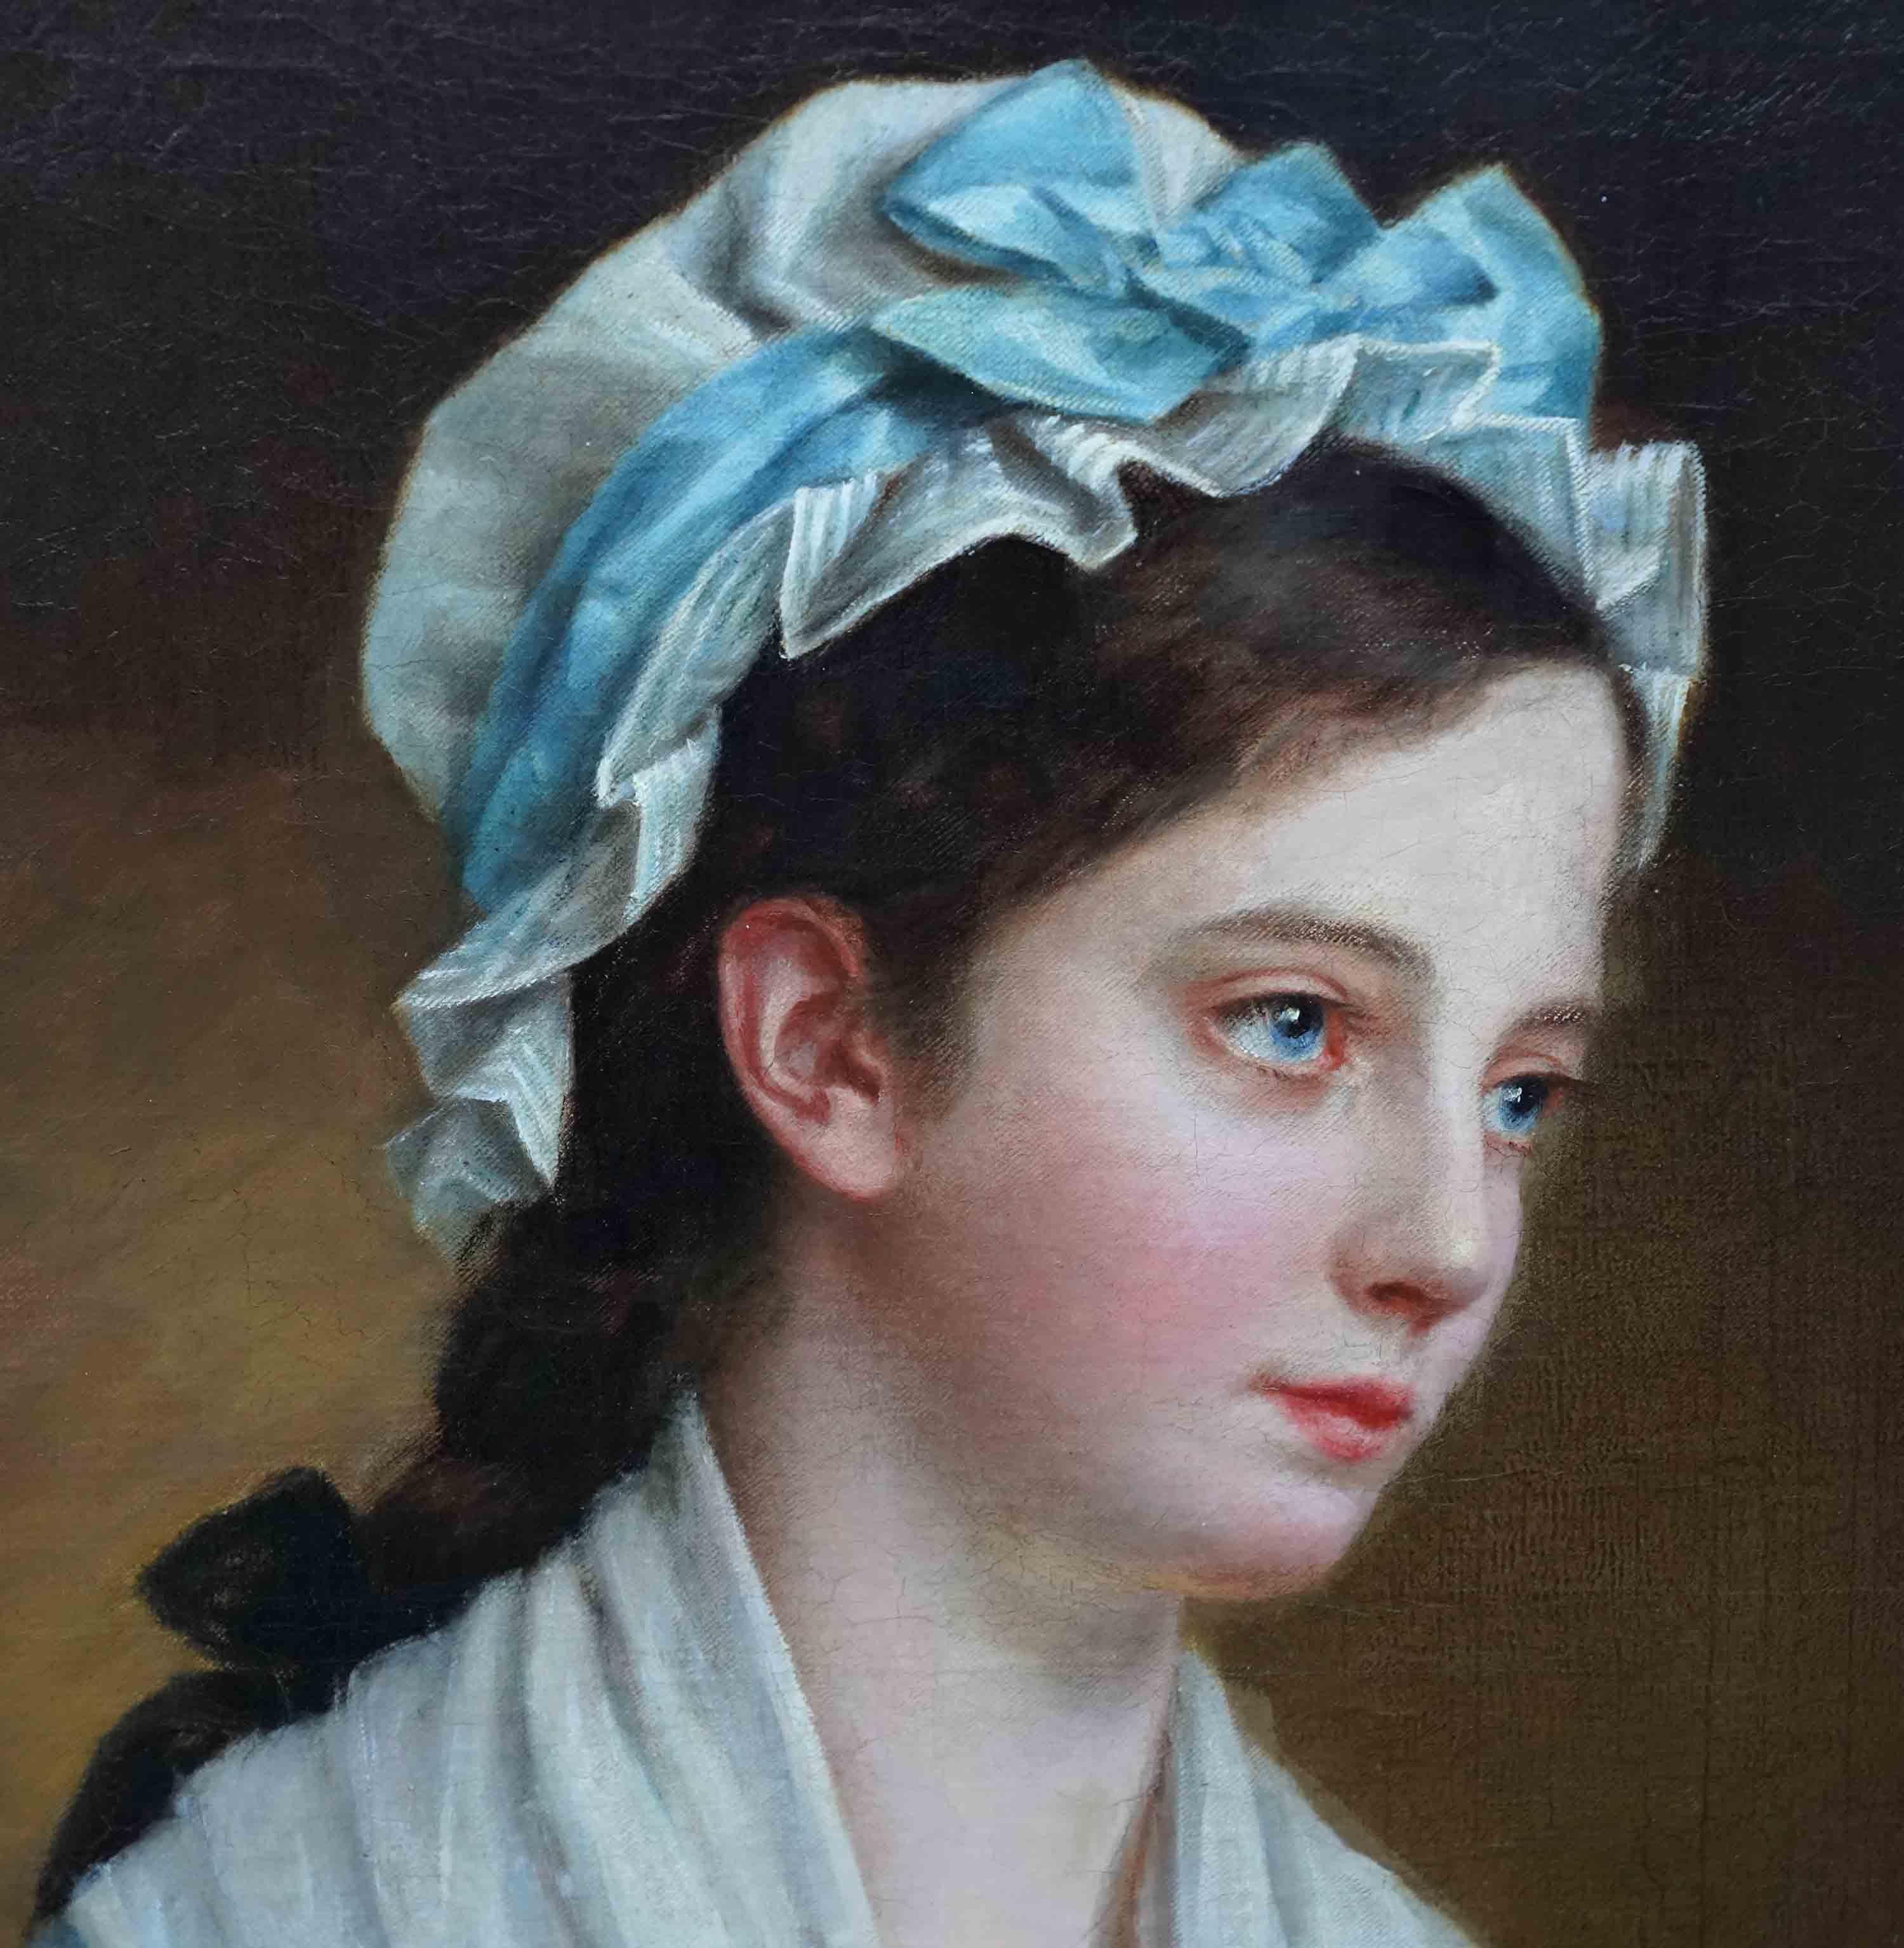 Ce charmant portrait à l'huile du XIXe siècle est attribué à l'école française et a été peint par une femme artiste. On y retrouve la composition et la délicatesse des peintres académiques français tels qu'Ingres et Jérôme. Elle a été peinte en 1879